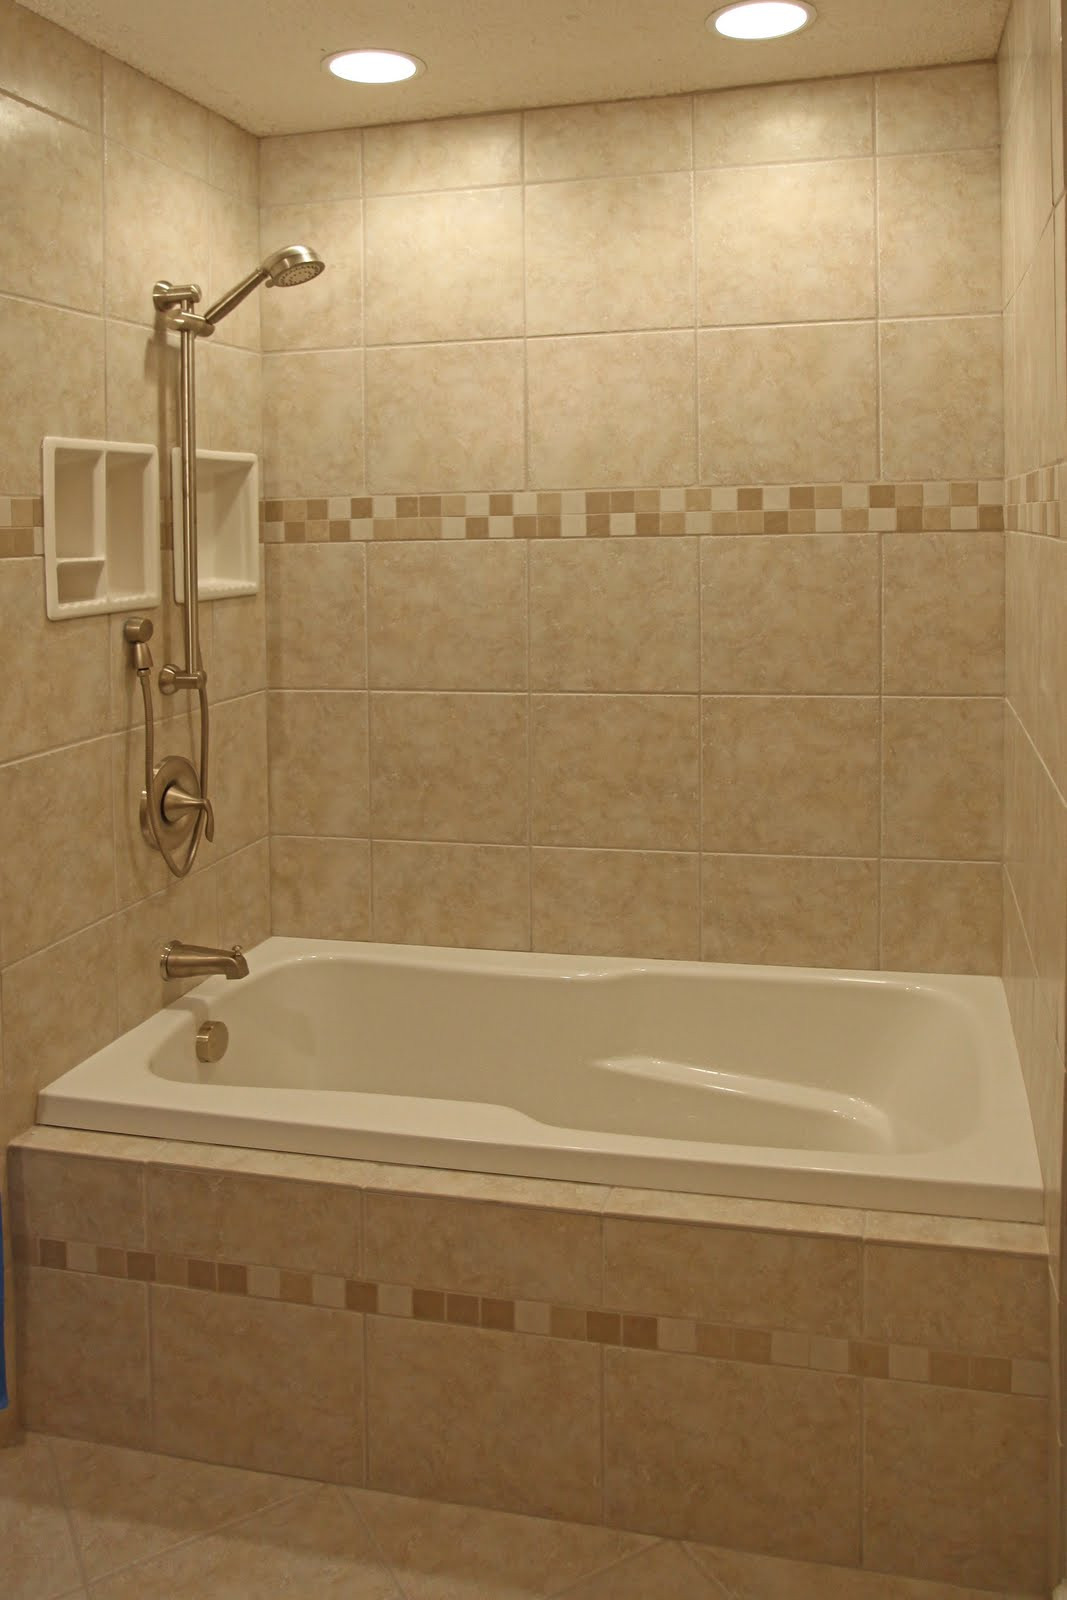 Bathroom Shower Tile Ideas
 Bathroom Remodeling Design Ideas Tile Shower Niches